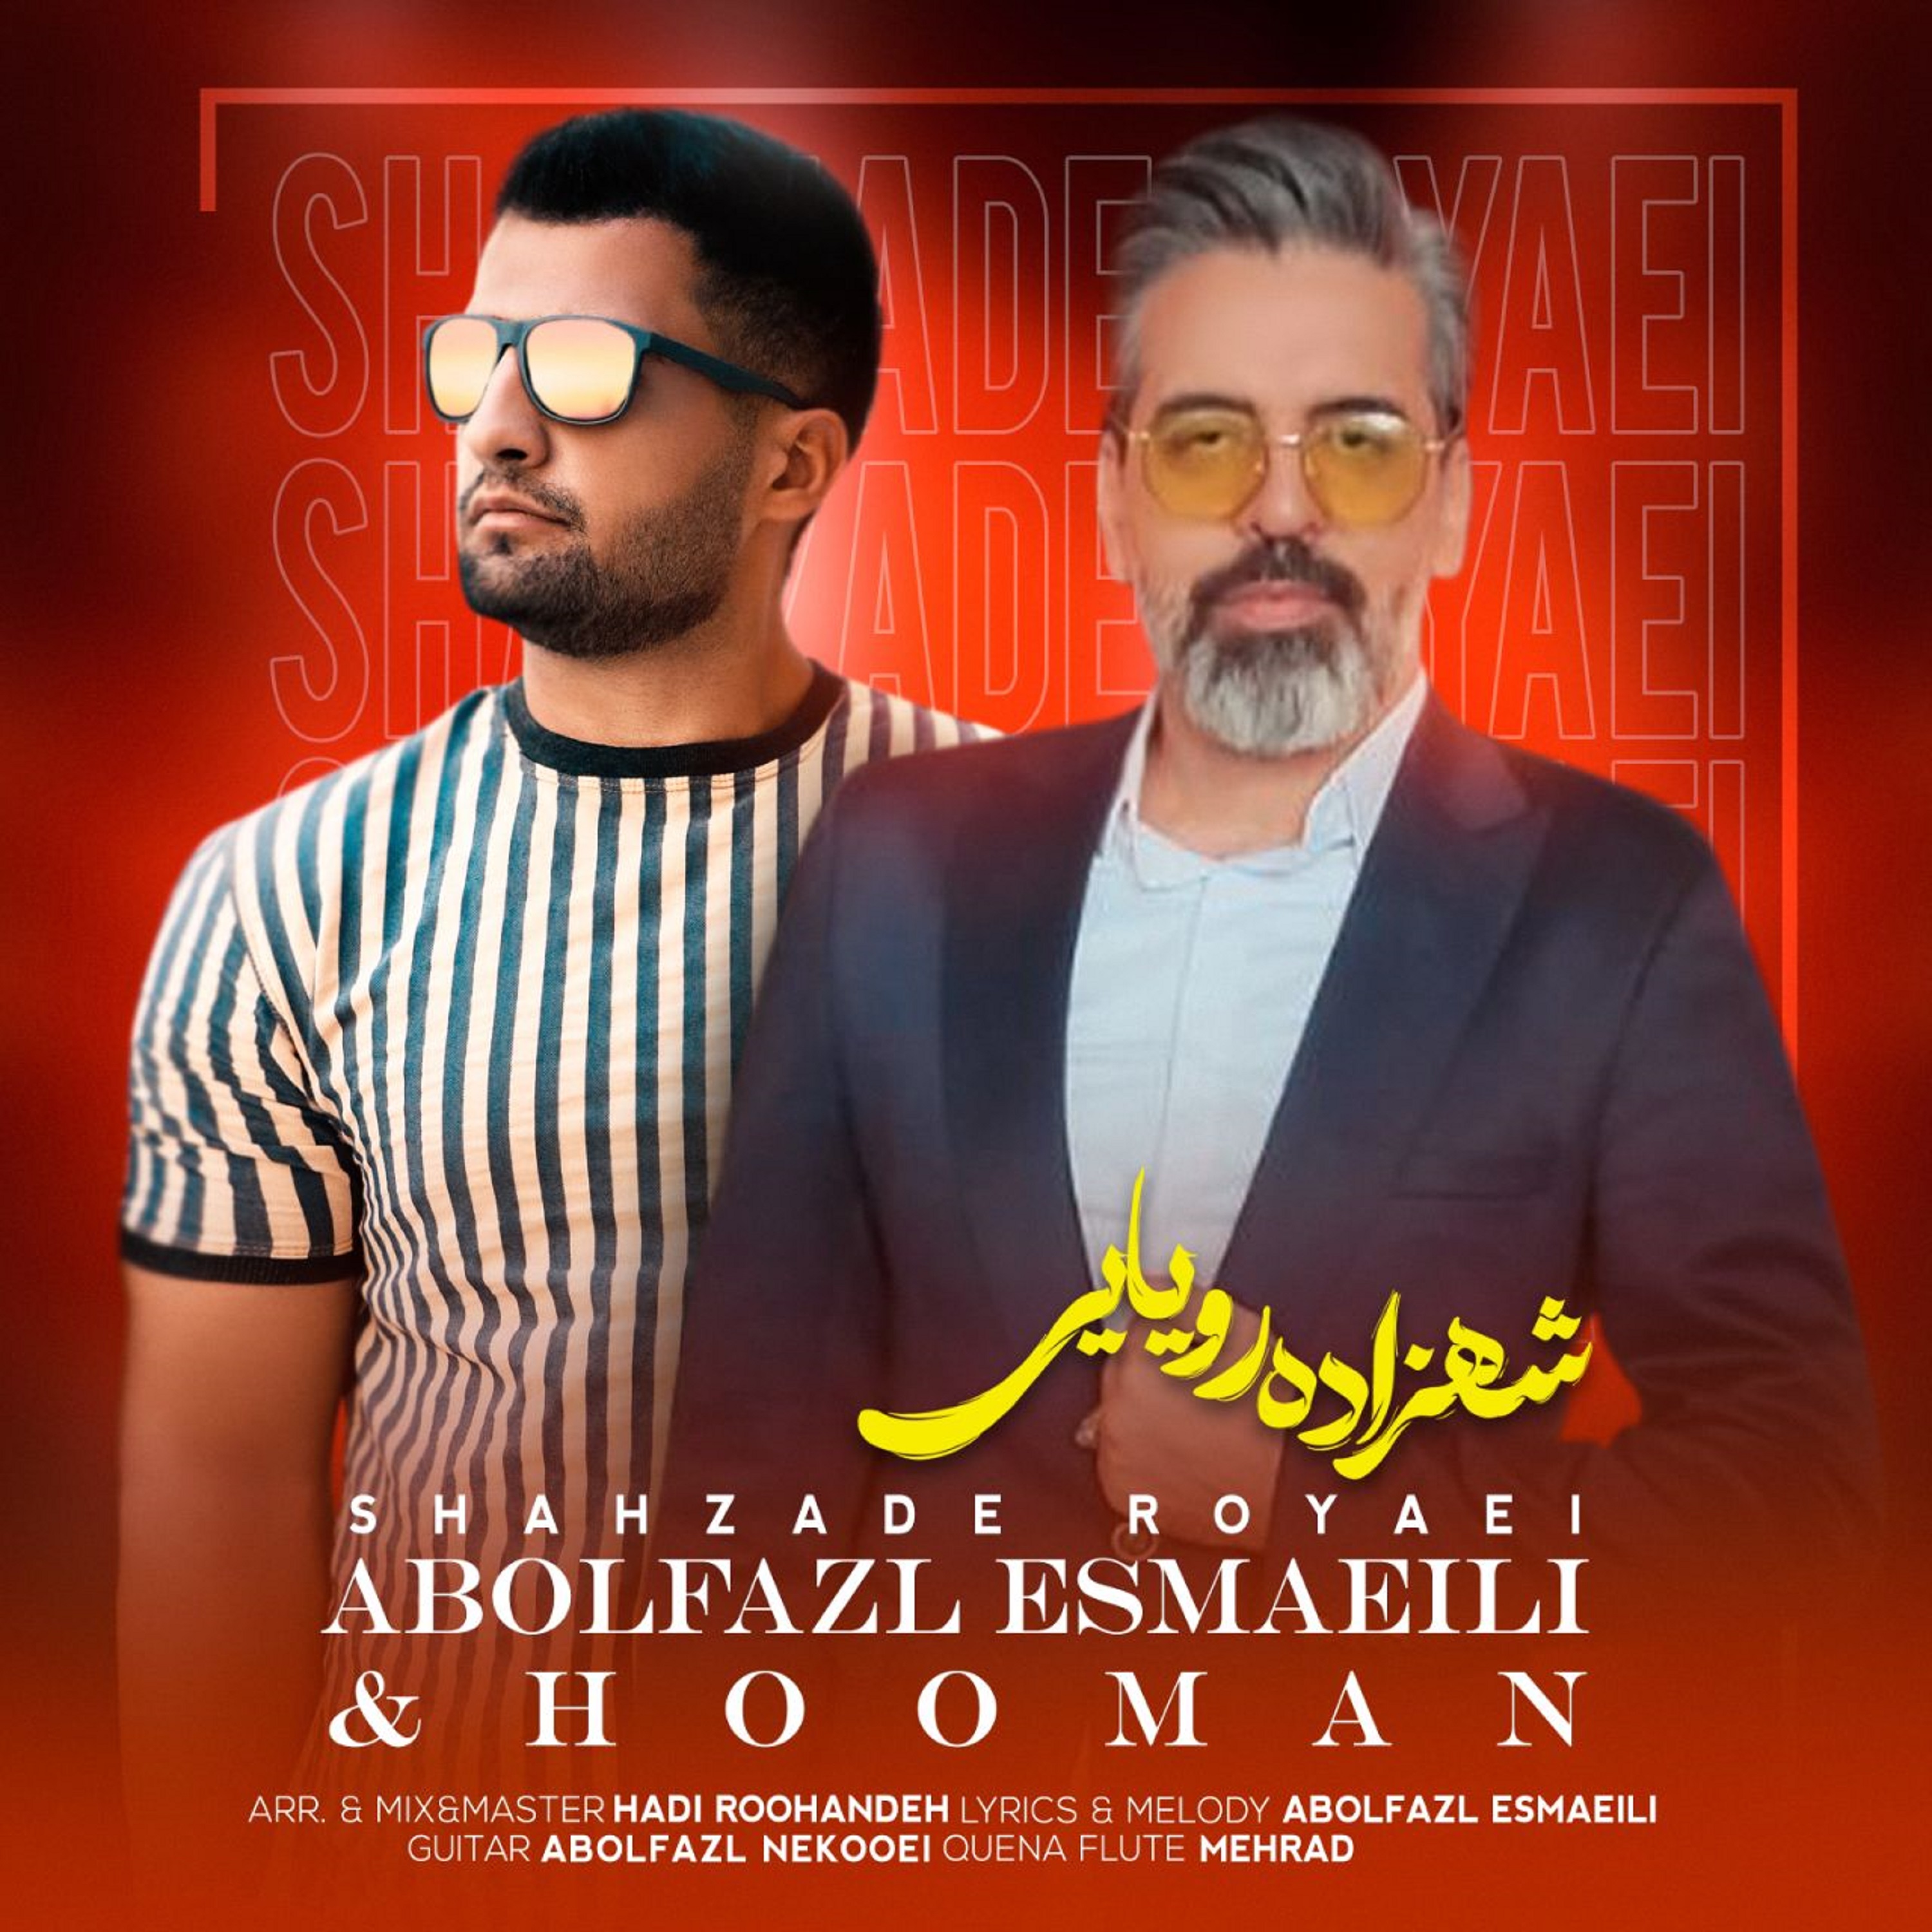  دانلود آهنگ جدید ابوالفضل اسماعیلی و هومان - شهزاده رویایی | Download New Music By Abolfazl Esmaeili & Hooman - Shahzadeh Rooyaei